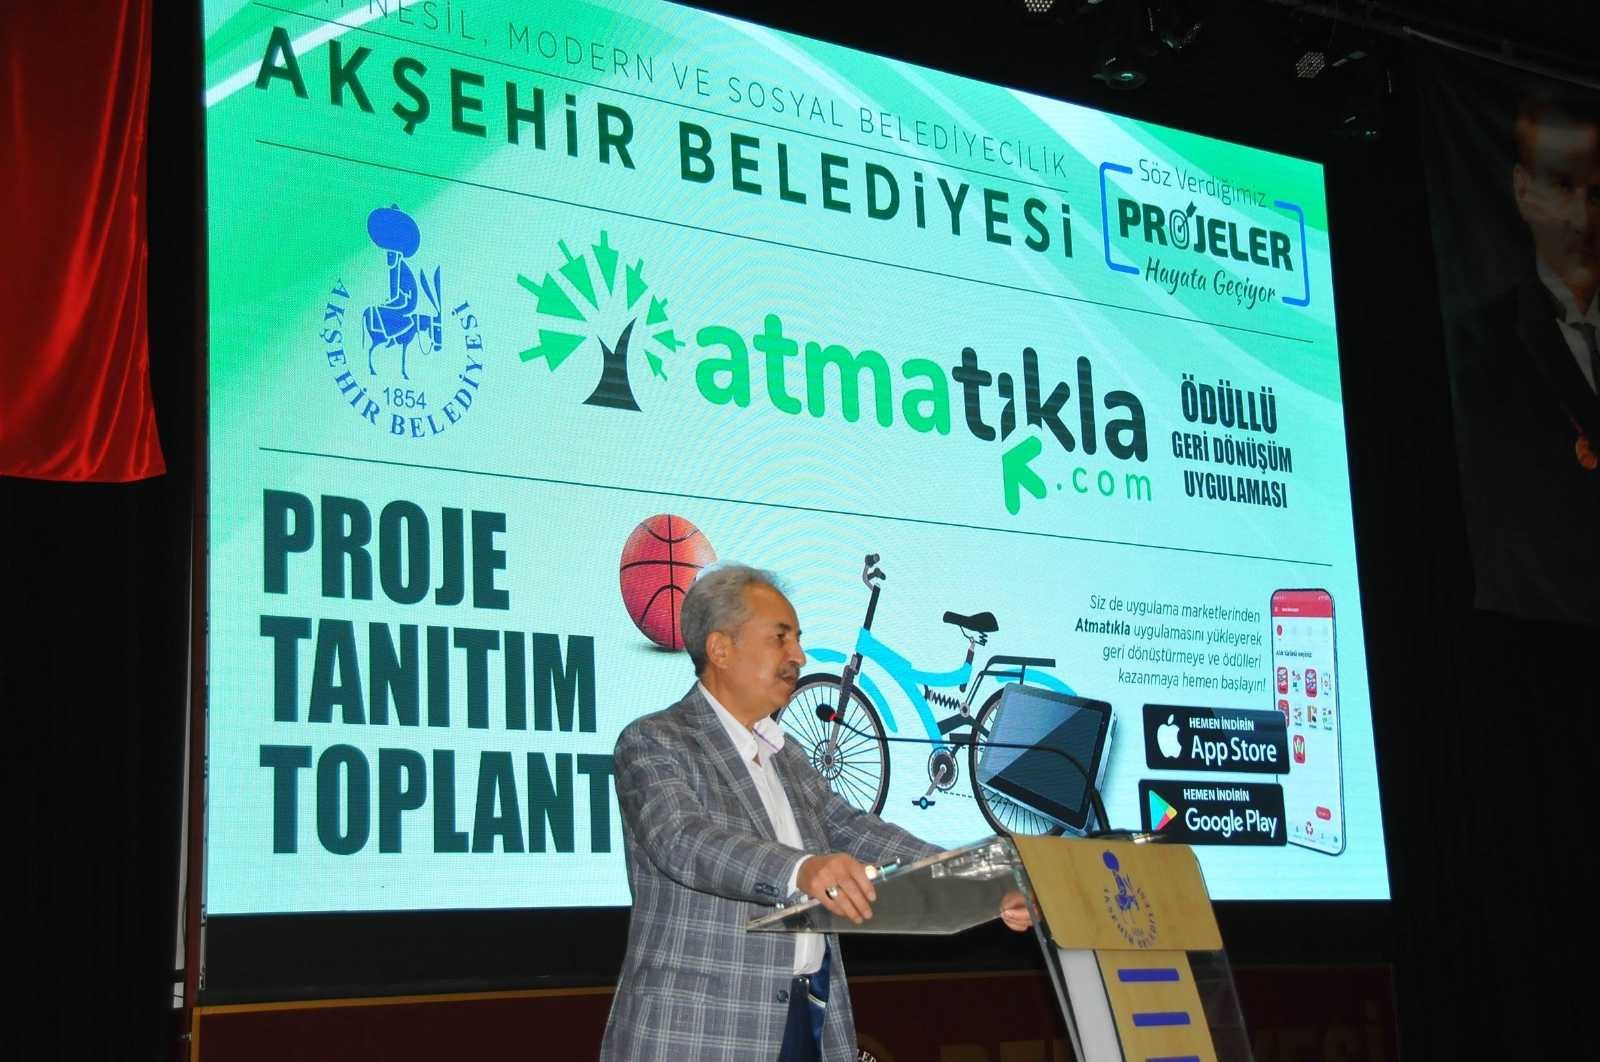 Akşehir Belediyesinden Türkiye’de bir ilk: “atmatıkla”